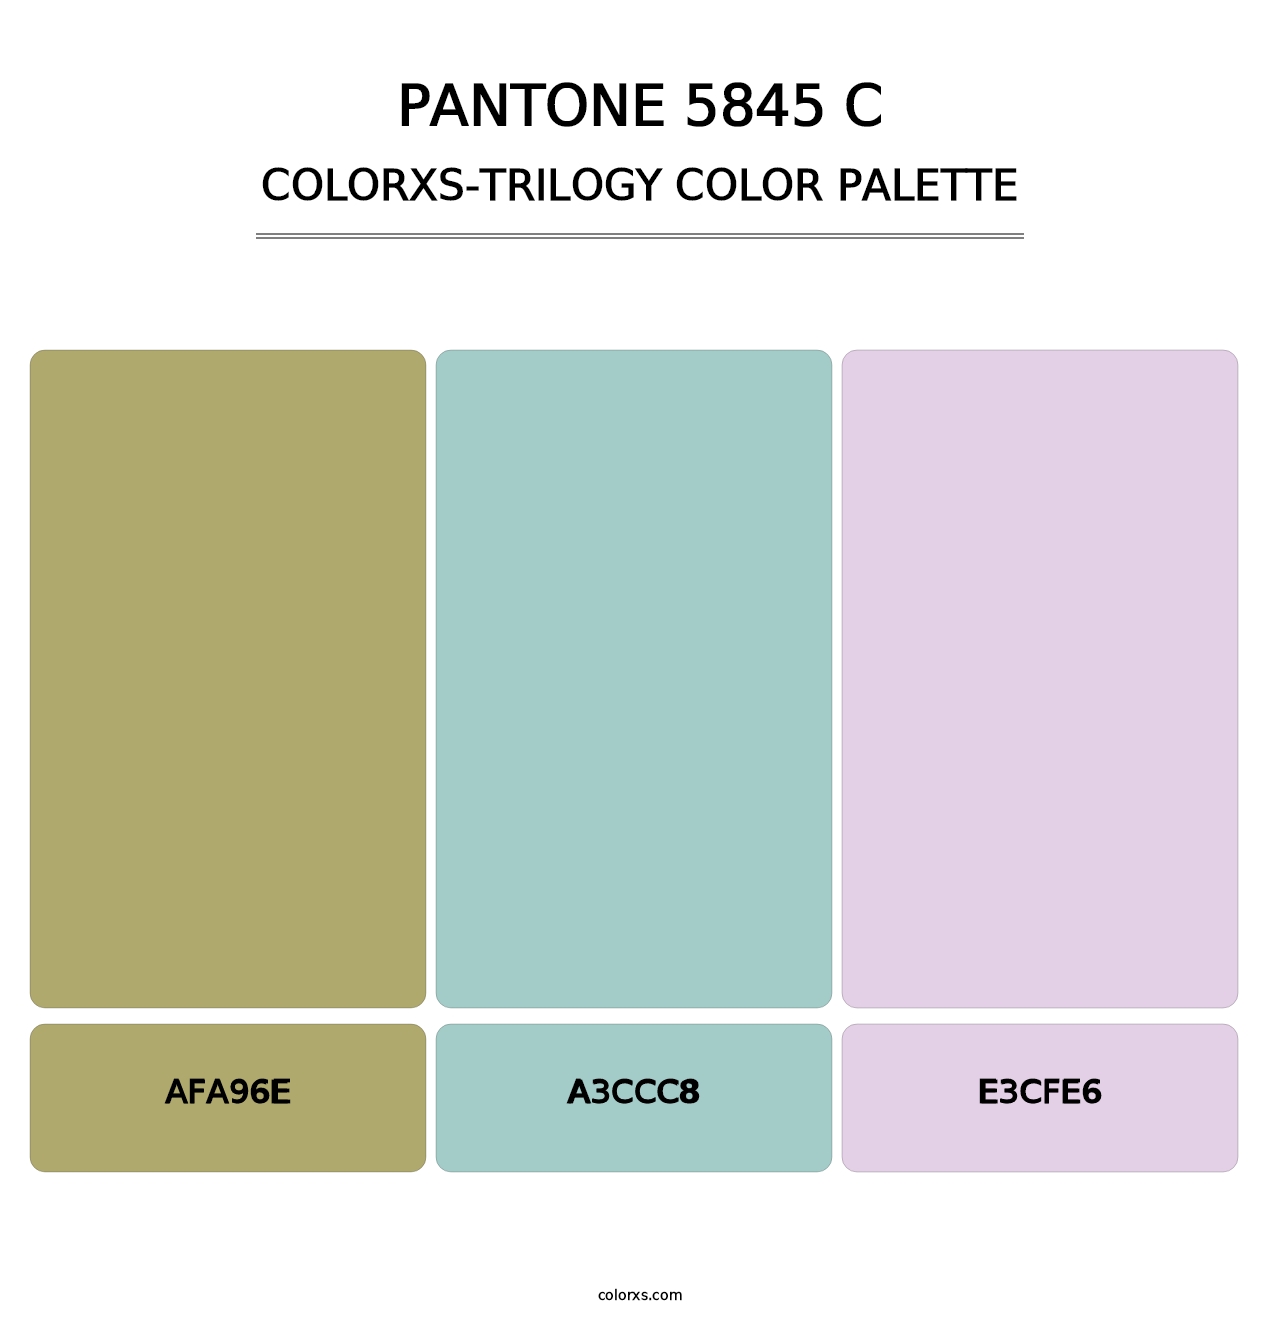 PANTONE 5845 C - Colorxs Trilogy Palette